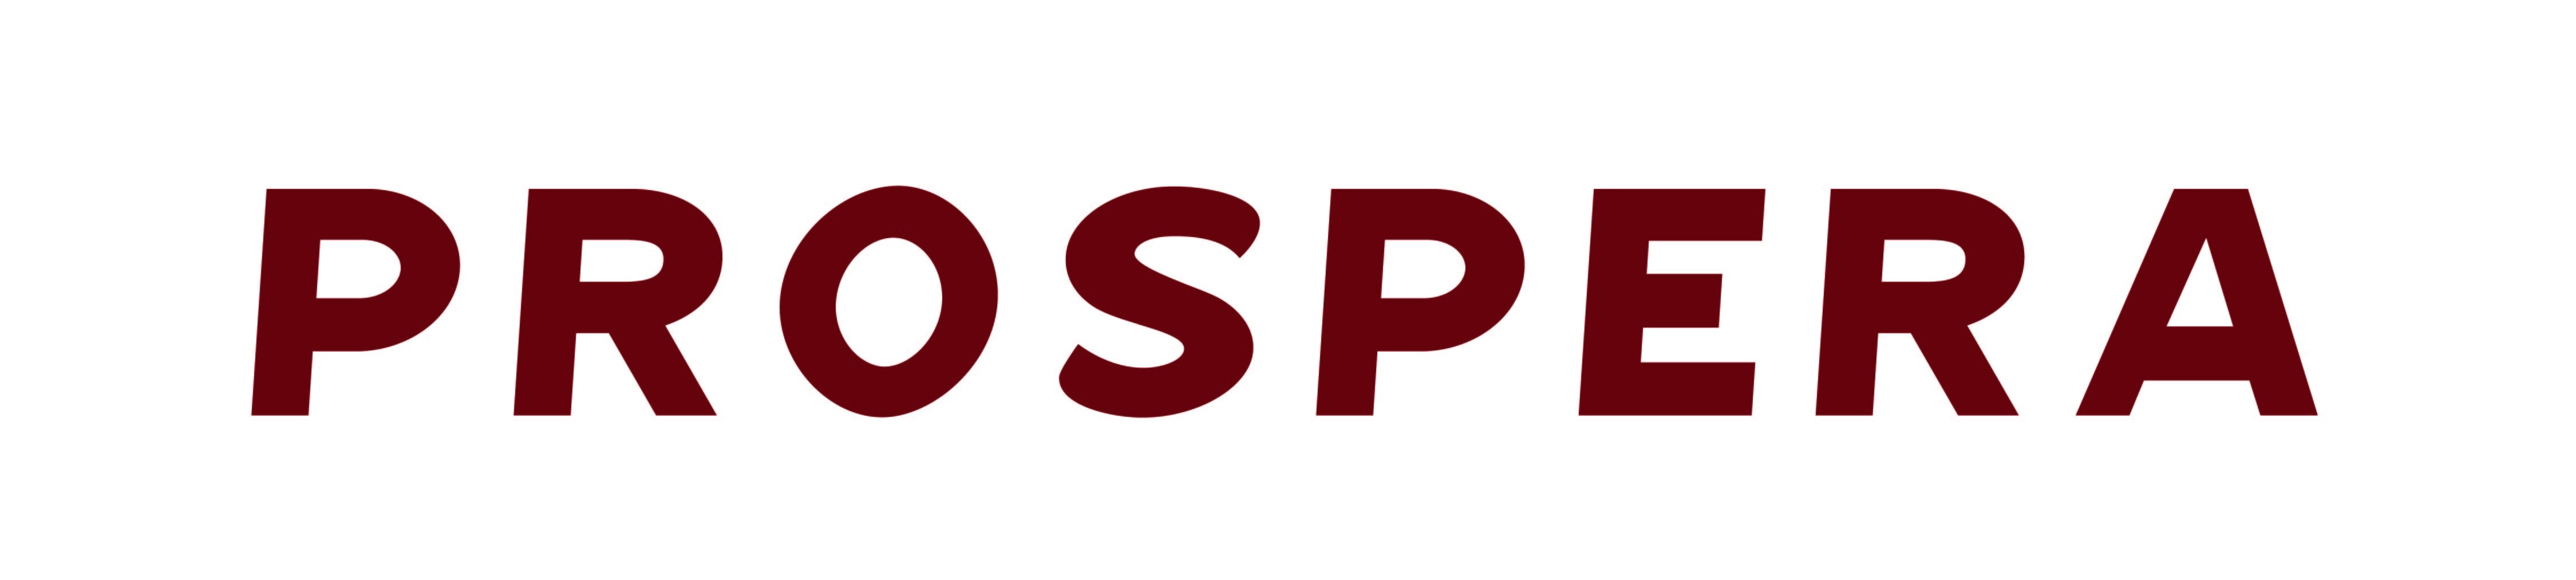 Prospera Logo - Prospera in Red